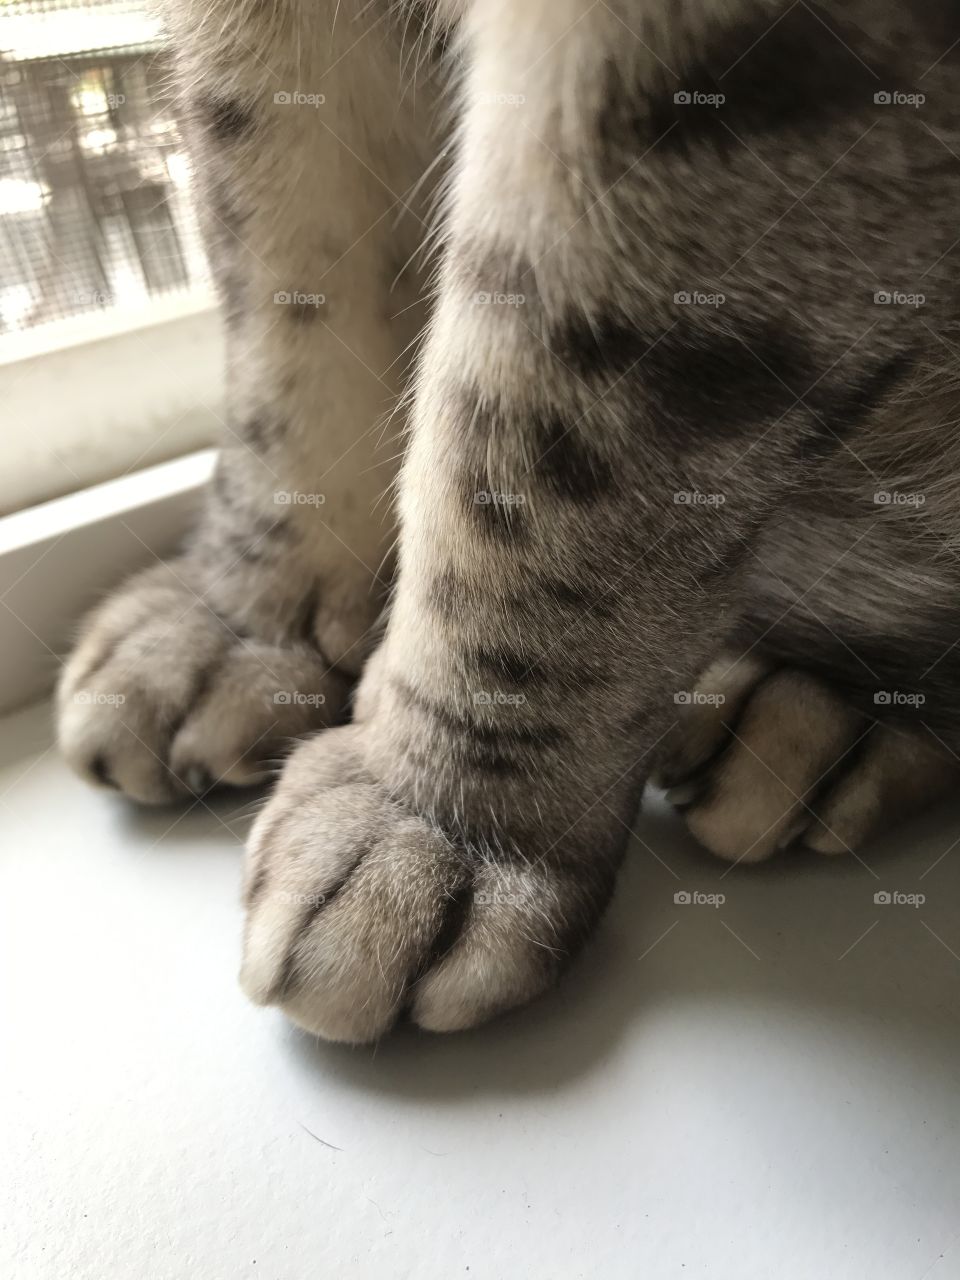 Cat paws!